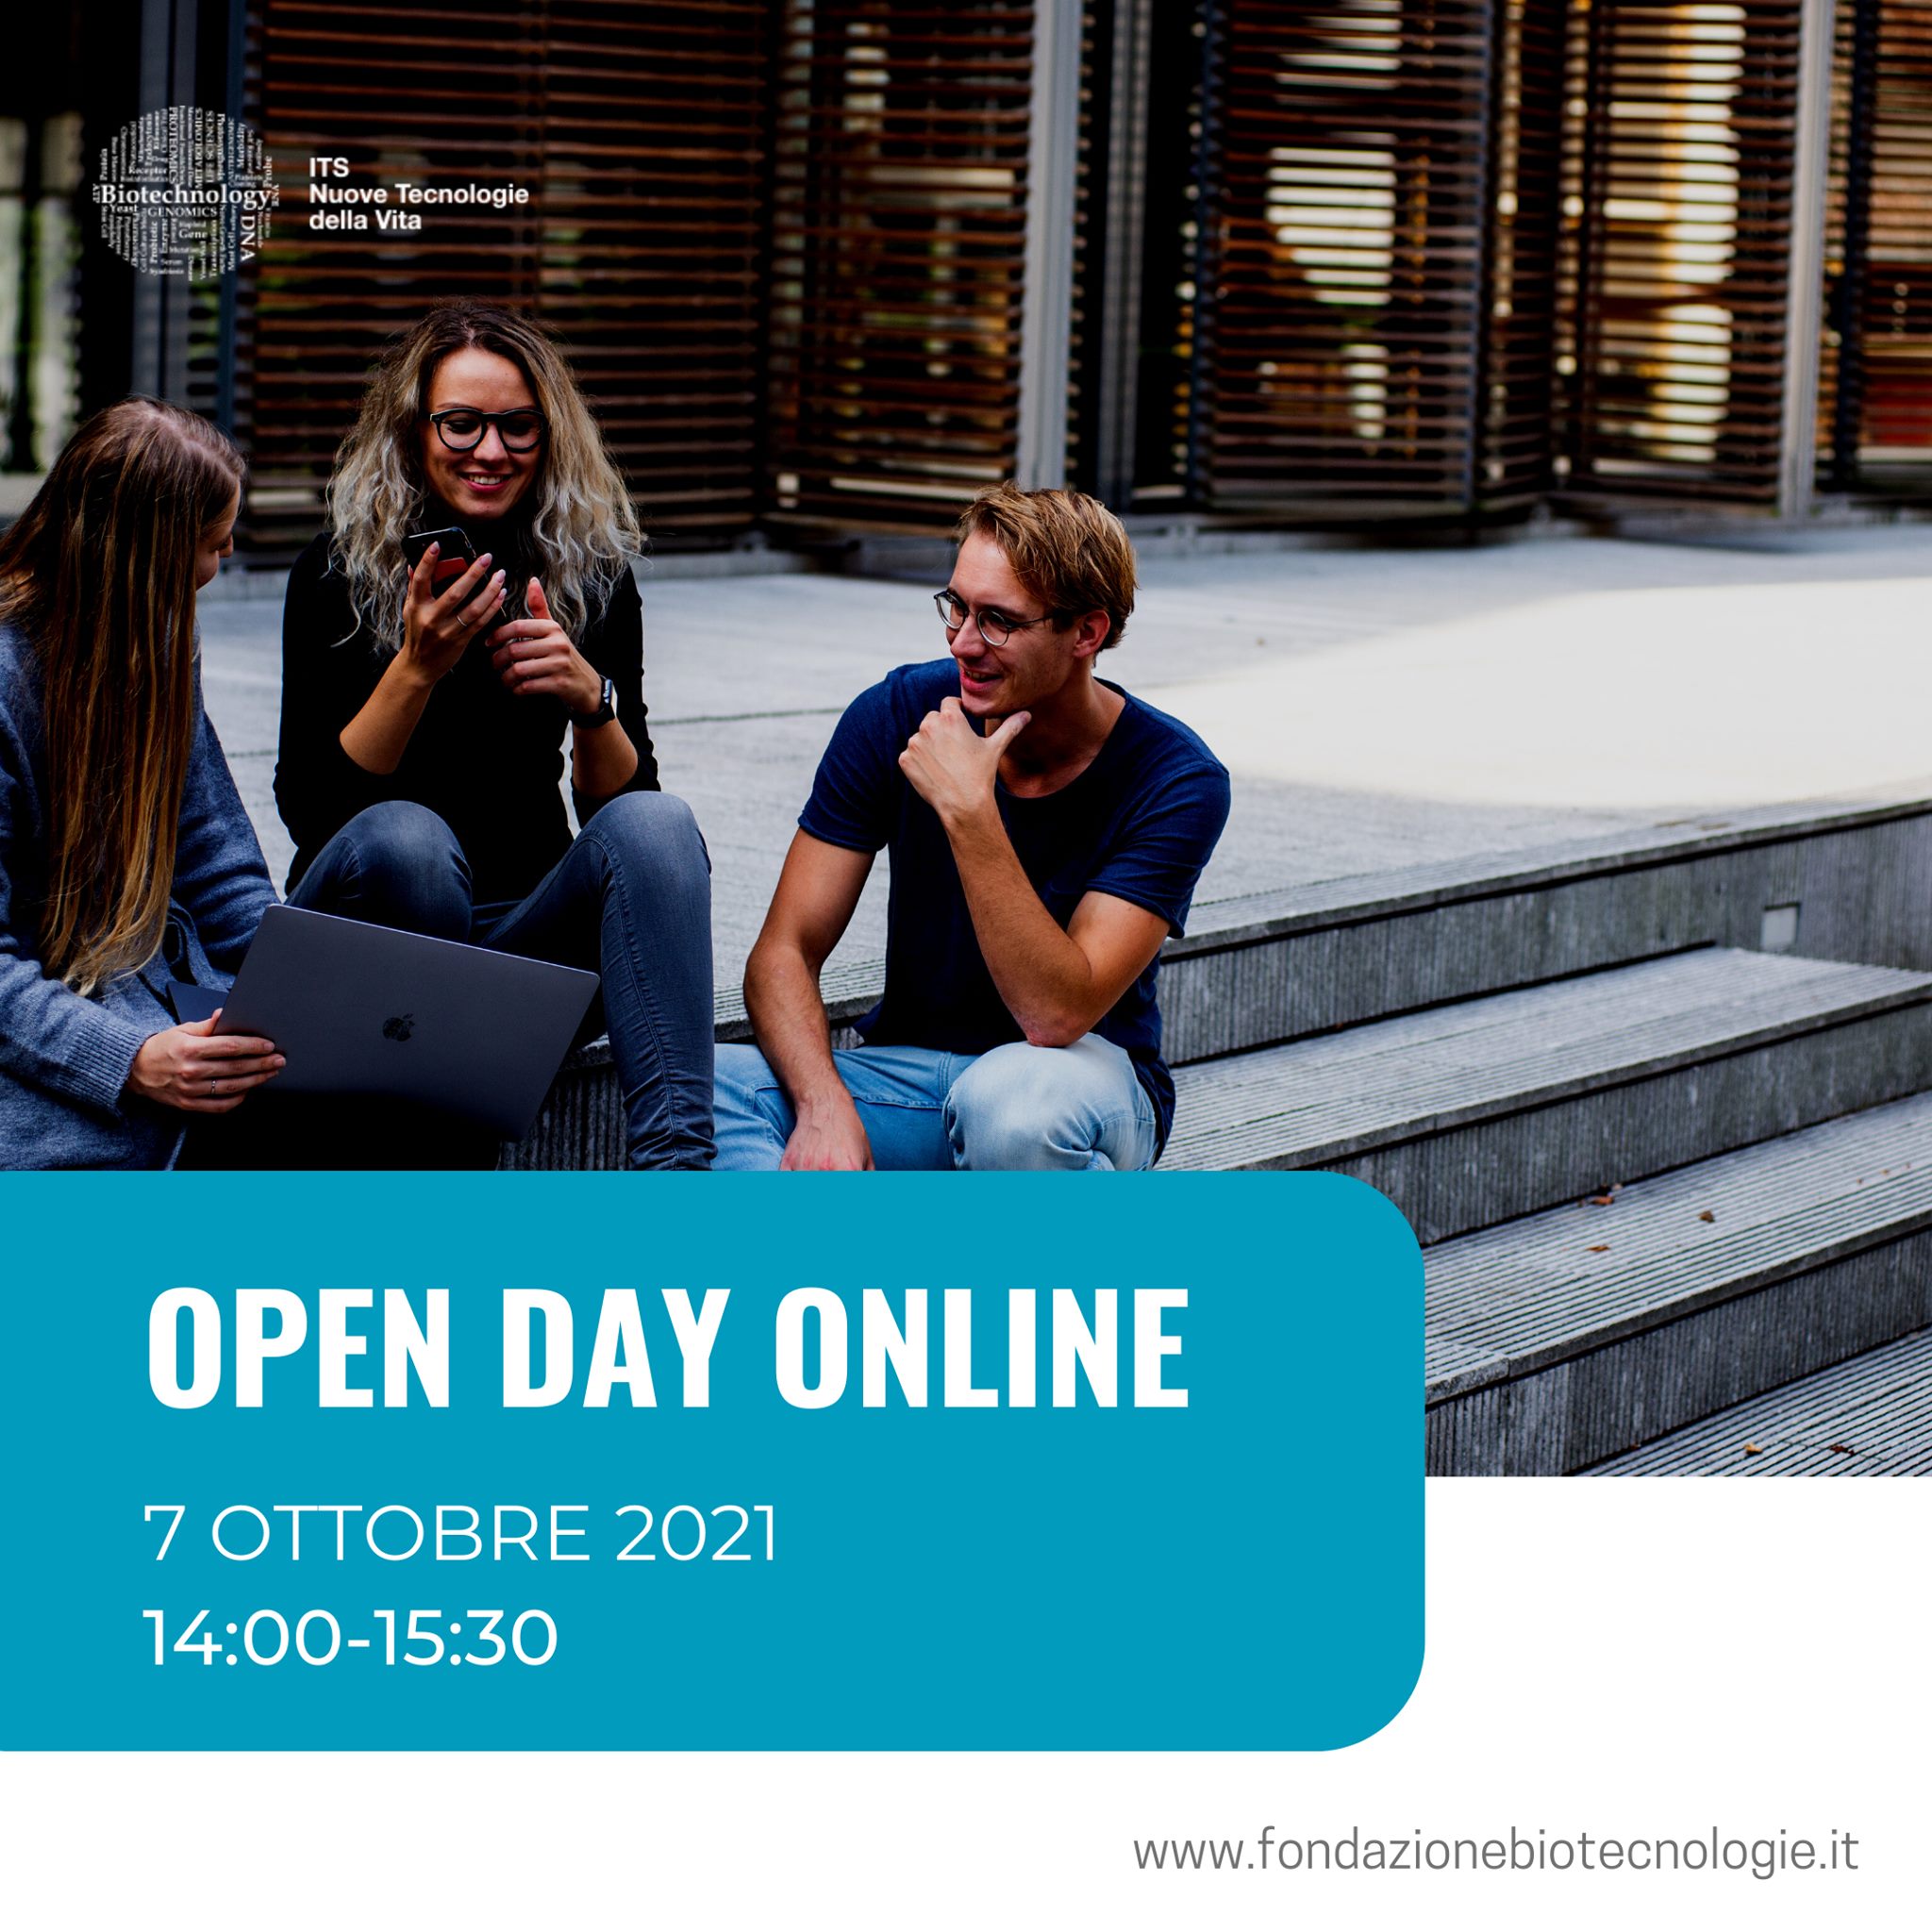 Open Day Online – ITS Nuove Tecnologie della Vita